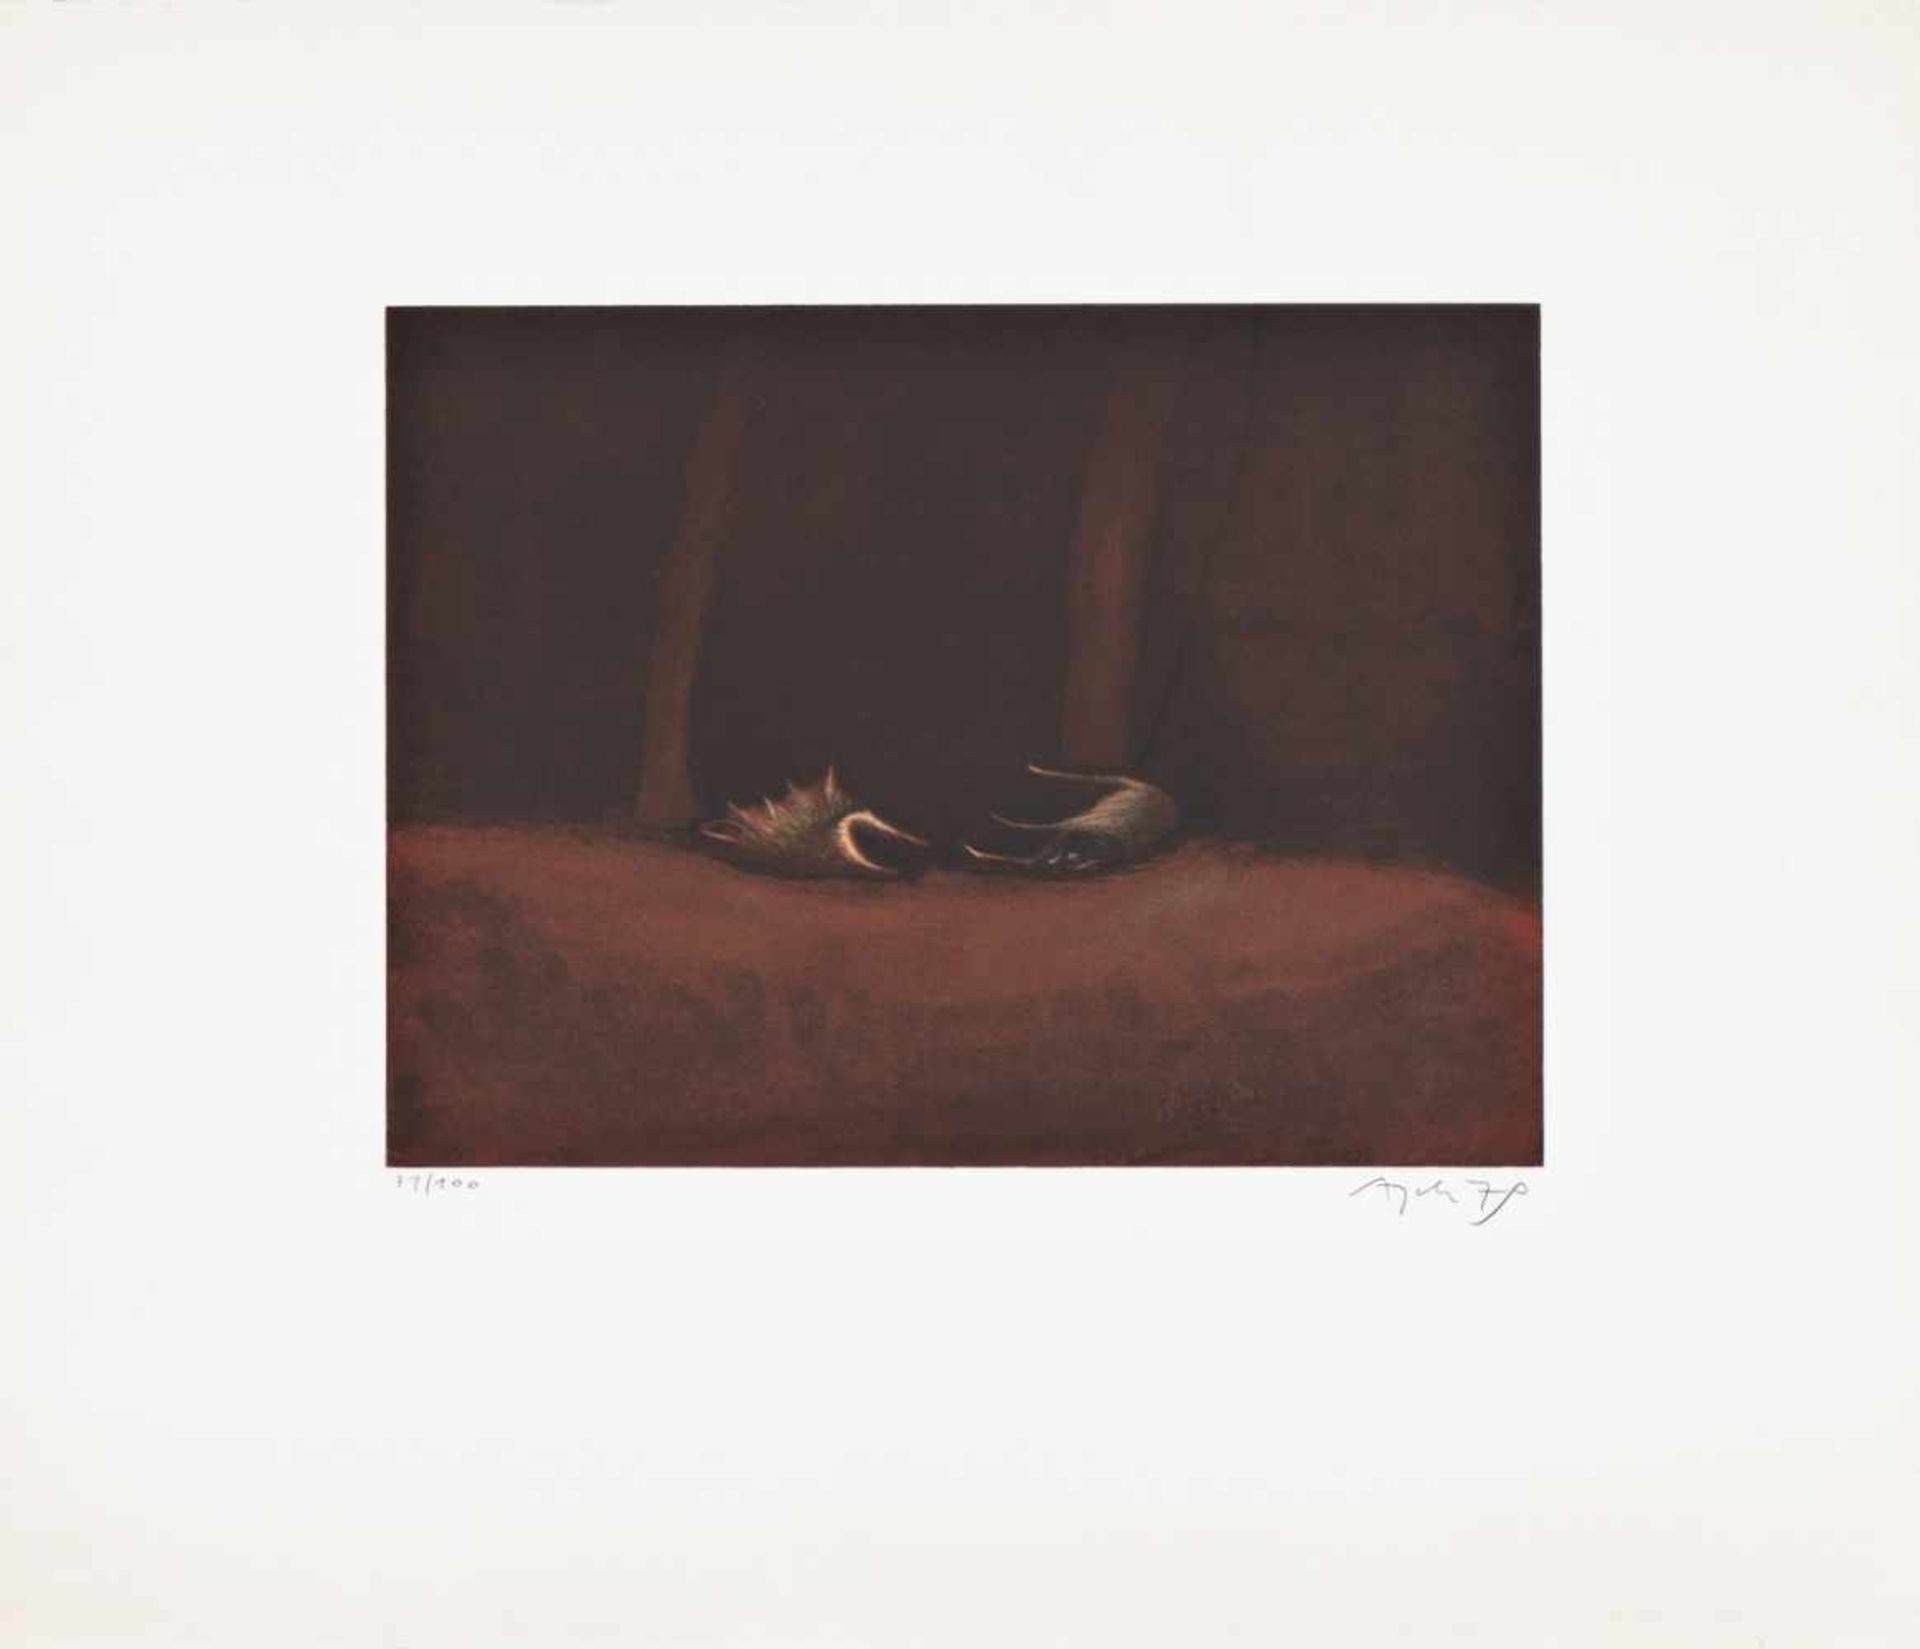 EDUARD ANGELI(1942 WIEN)SCHMUTZIGES WASSER 2, 1979Farbradierung auf Bütten, Plattengröße: 29,4 x